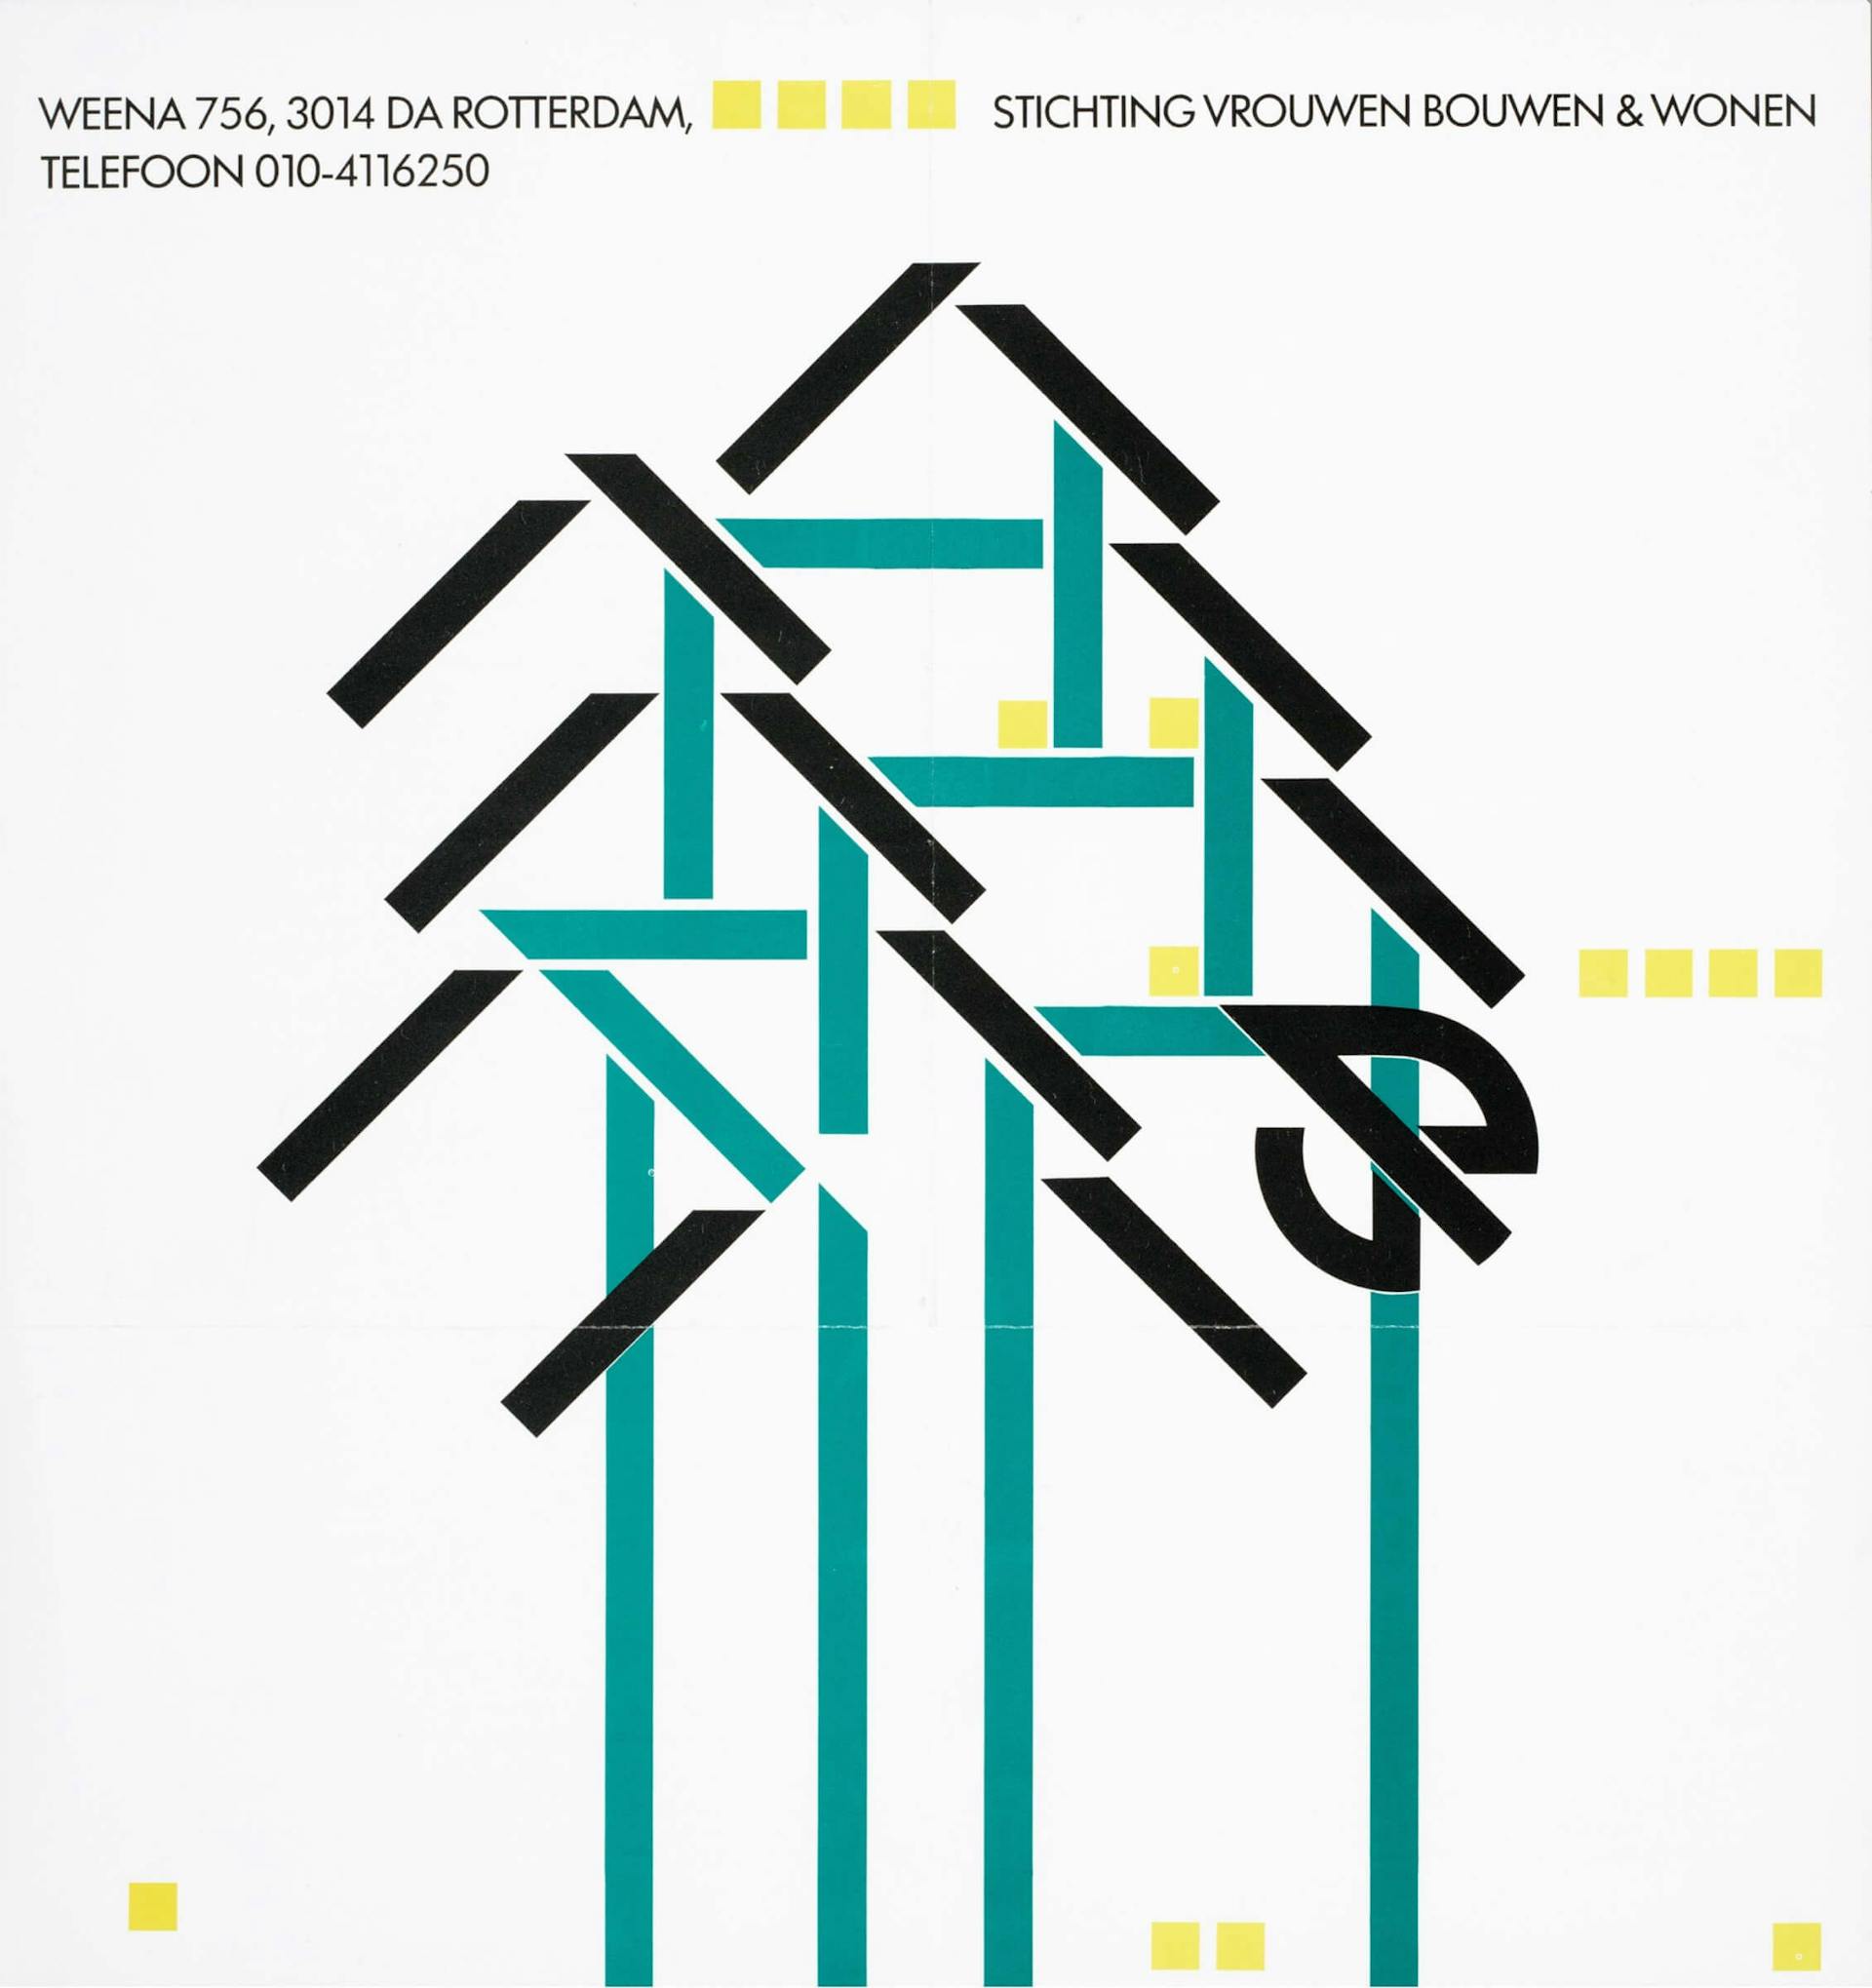 Advertentie Stichting Vrouwen Bouwen Wonen, Rotterdam, 1986, ontwerp: onbekend. Bron: Collectie IAV-Atria 